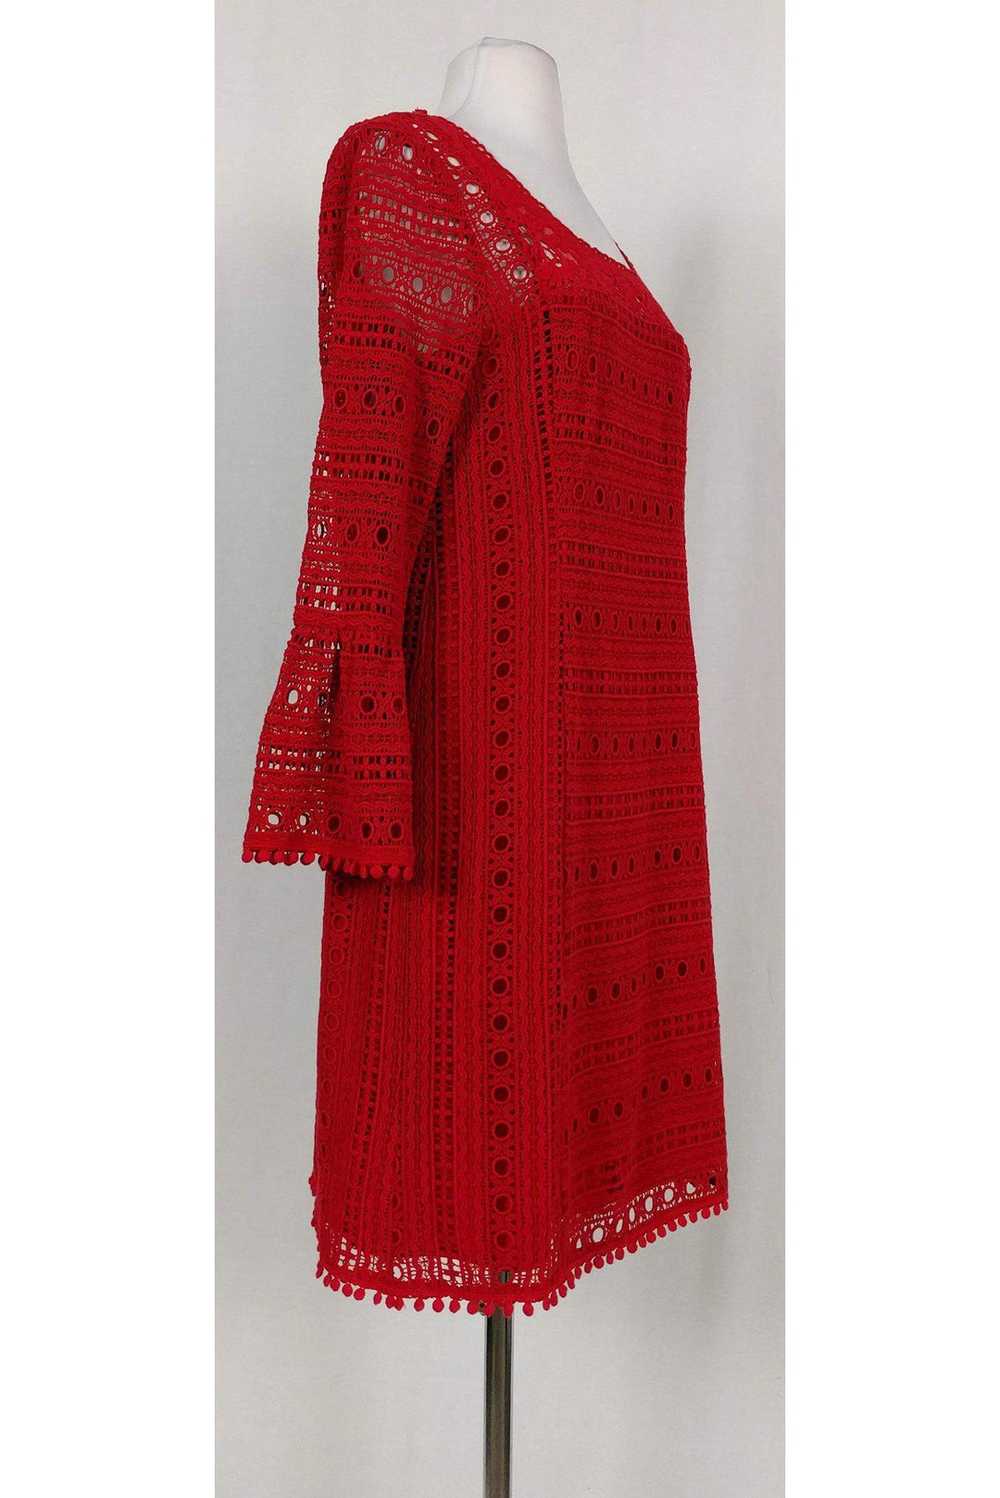 Nanette Lepore - Red Eyelet Dress w/ Bell Sleeves… - image 2